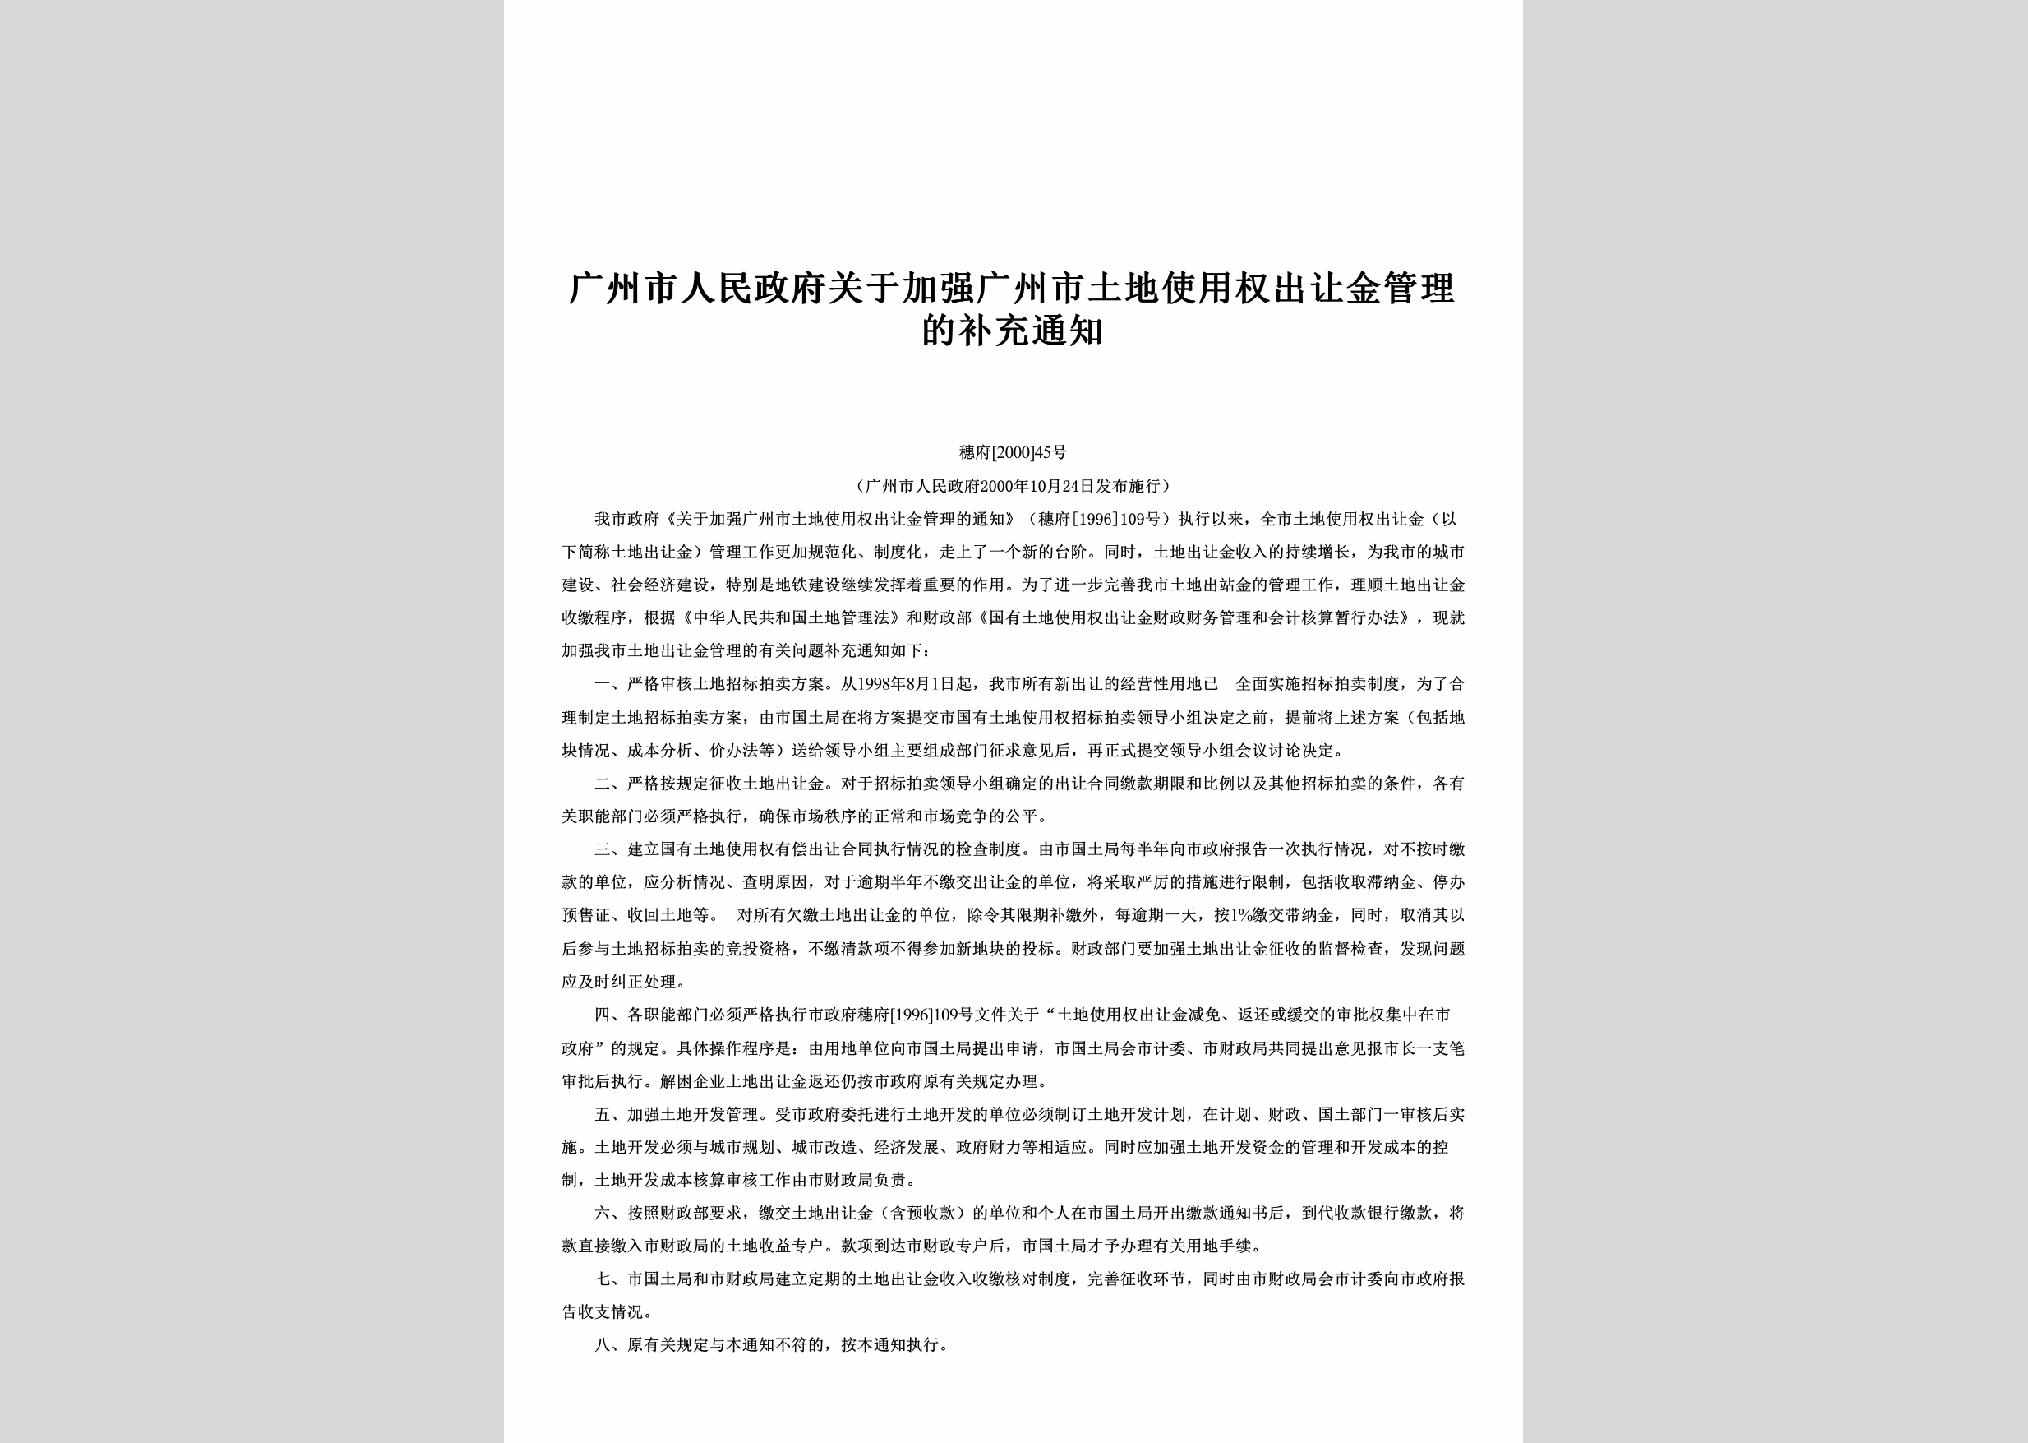 穗府[2000]45号：关于加强广州市土地使用权出让金管理的补充通知